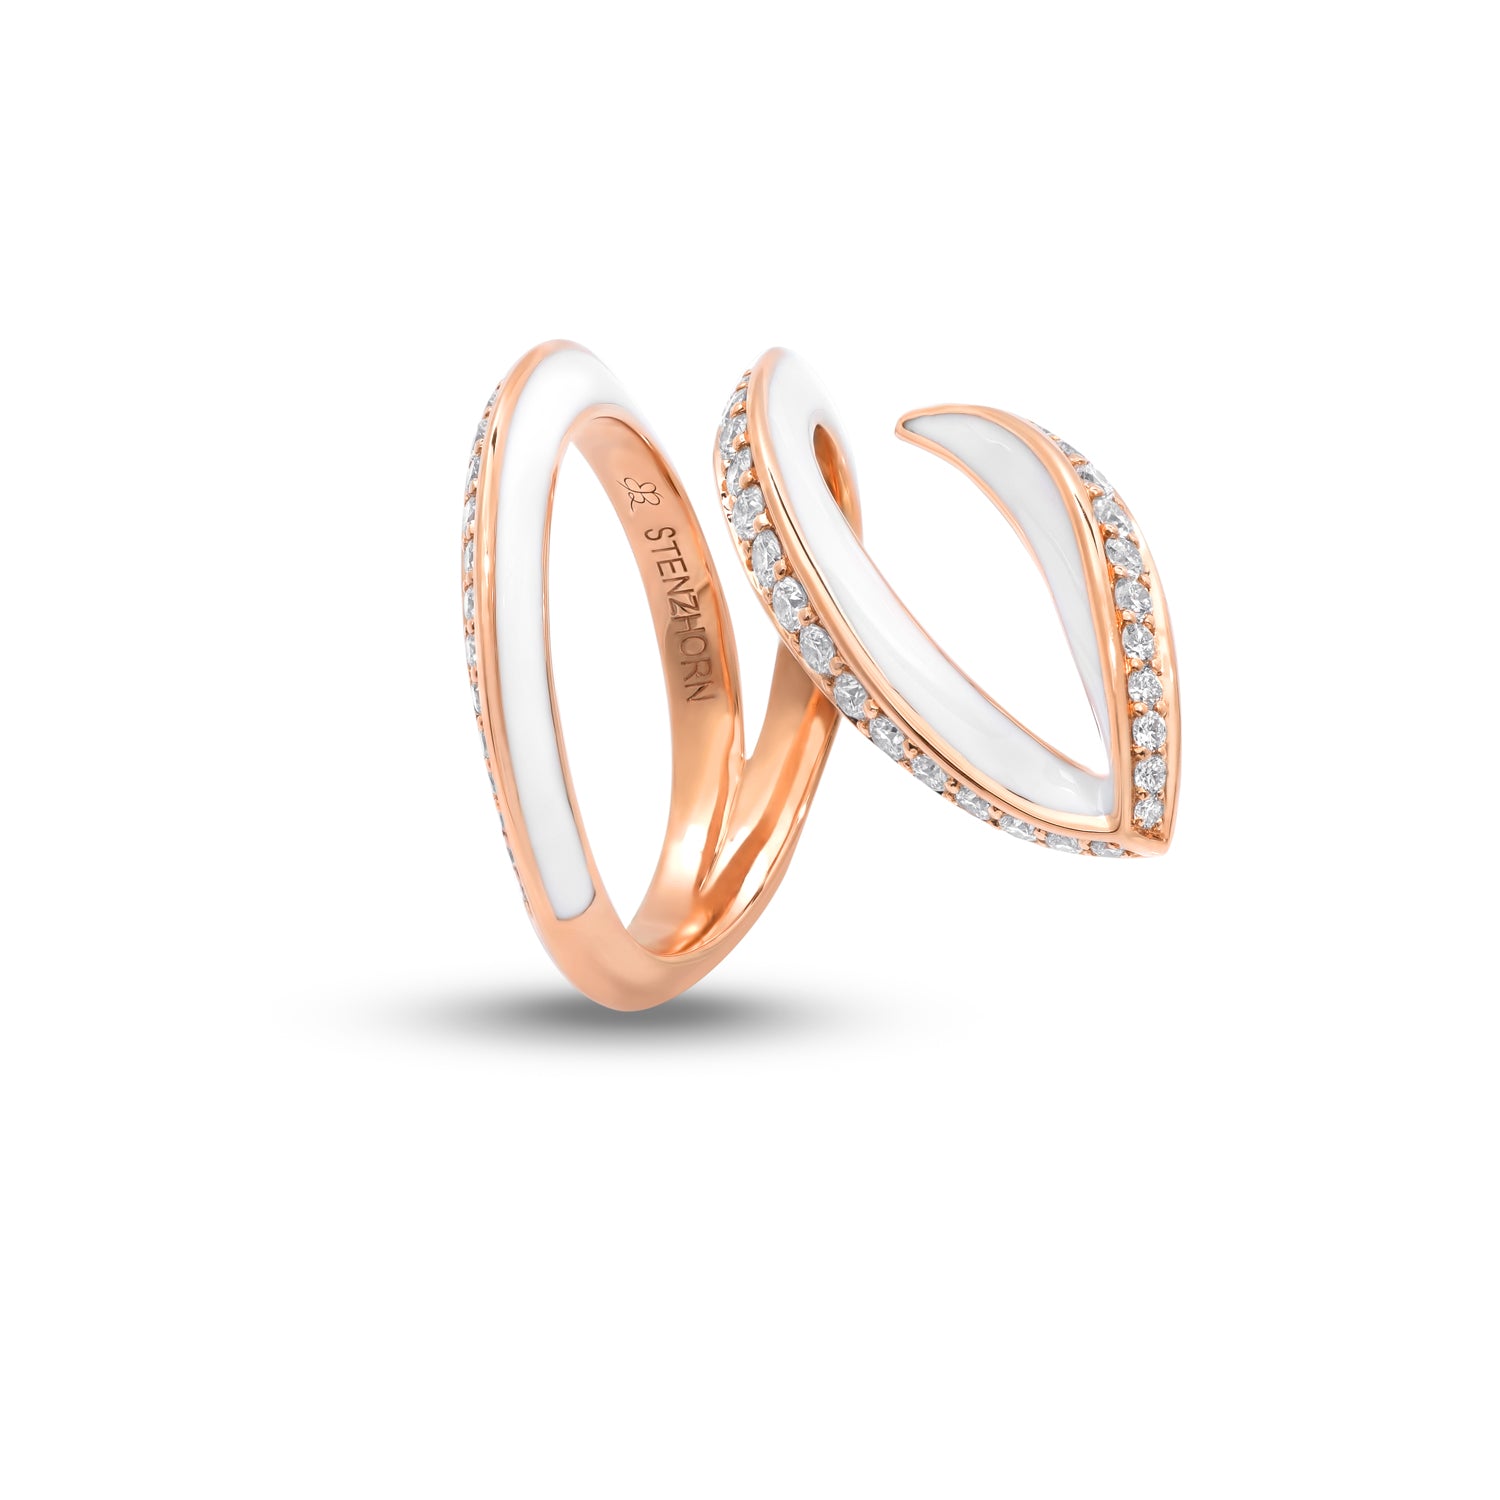 VIVA geschwungener Ring mit Diamanten und weißer Emaille